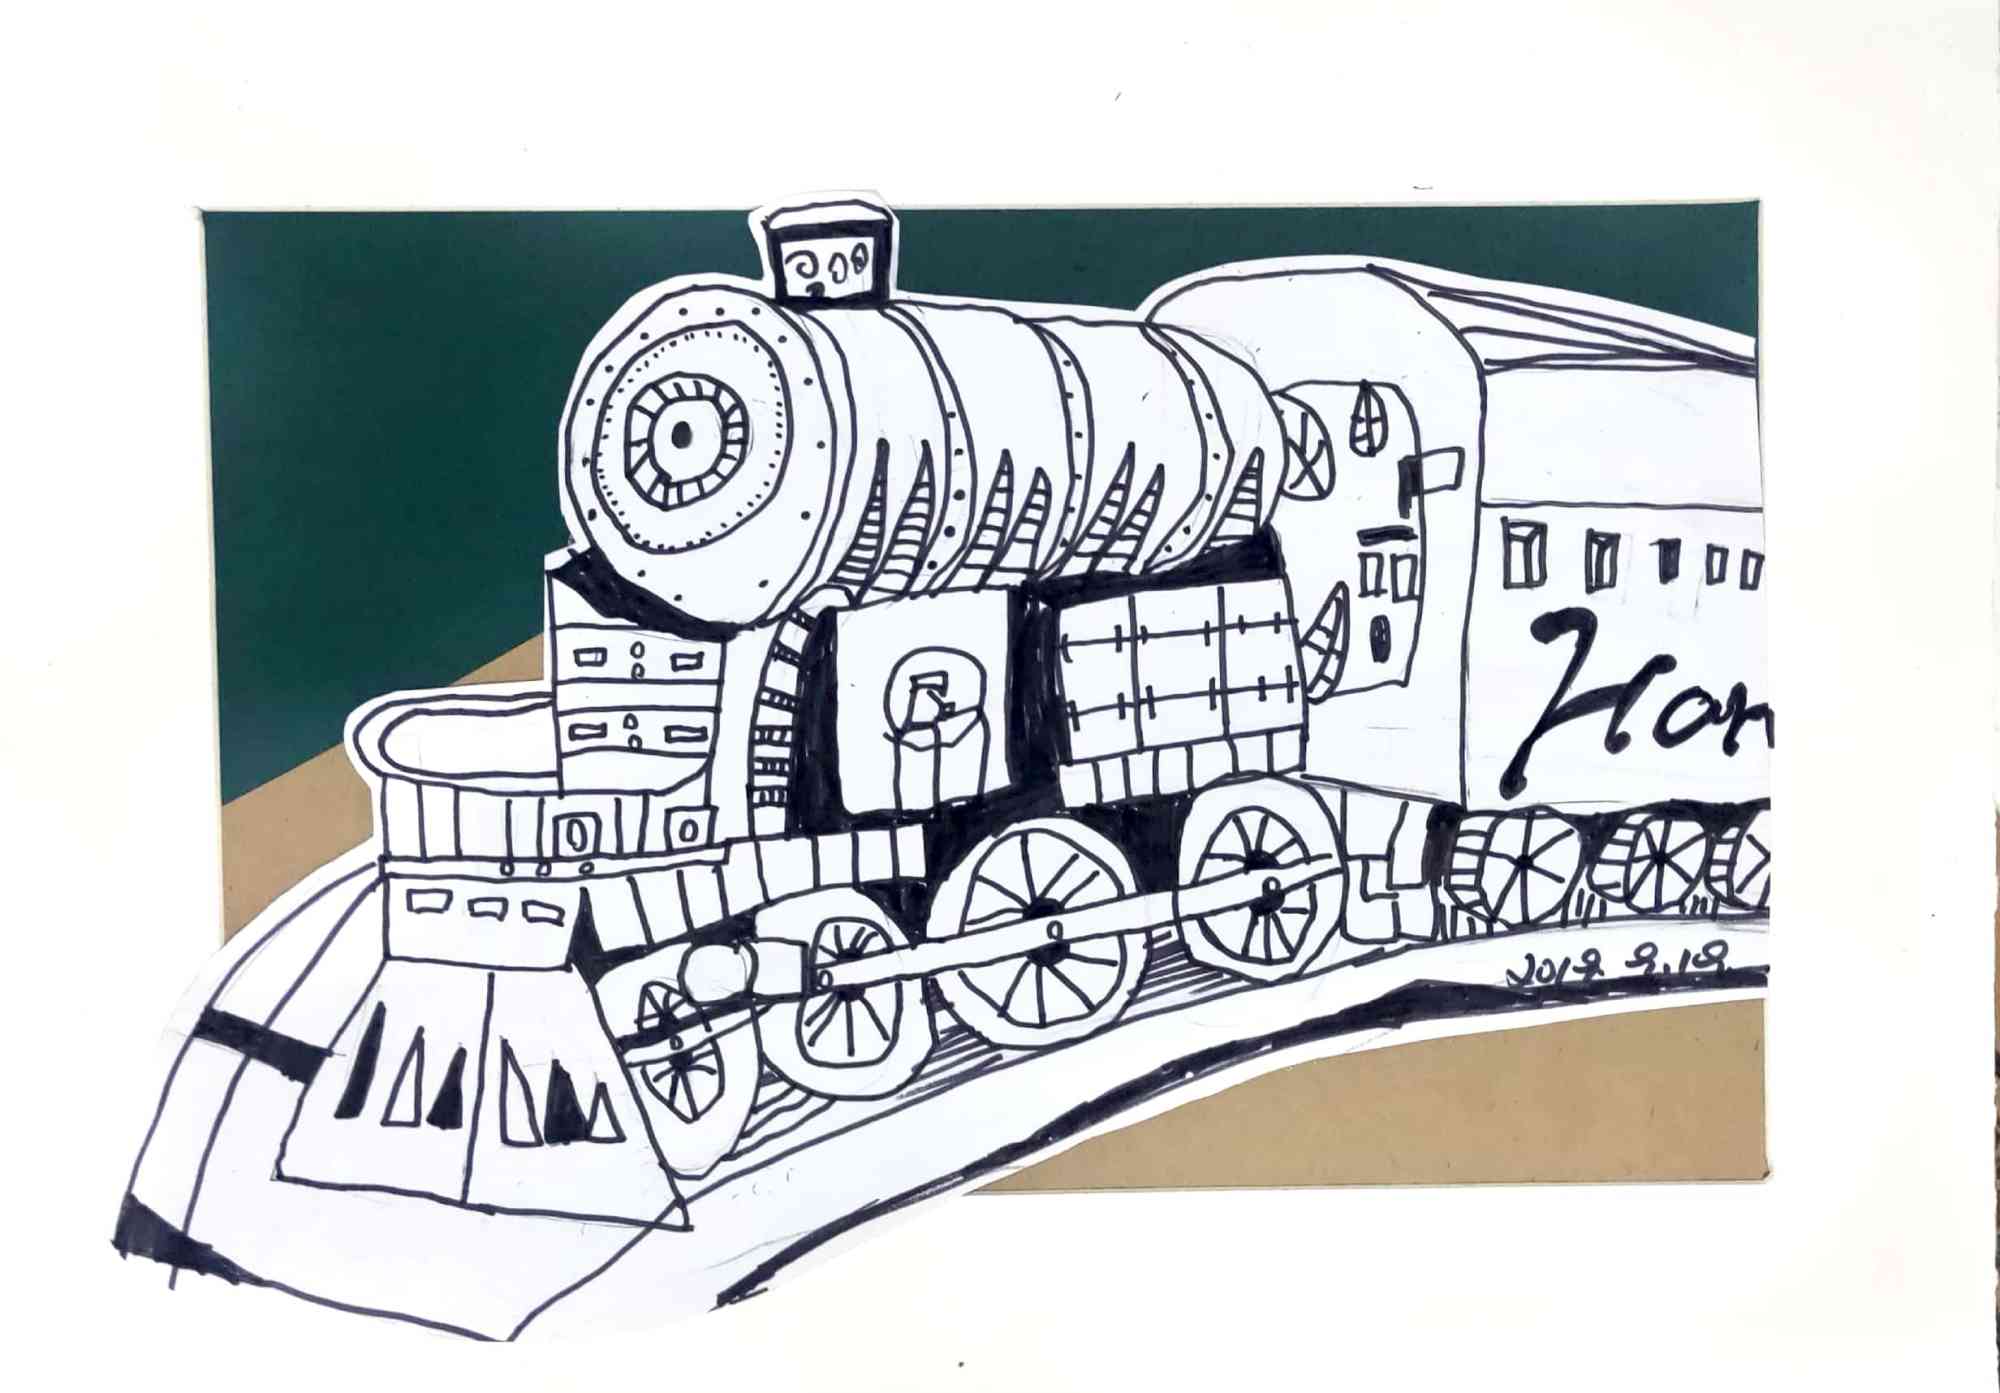 蒸汽火车绘画作品图片